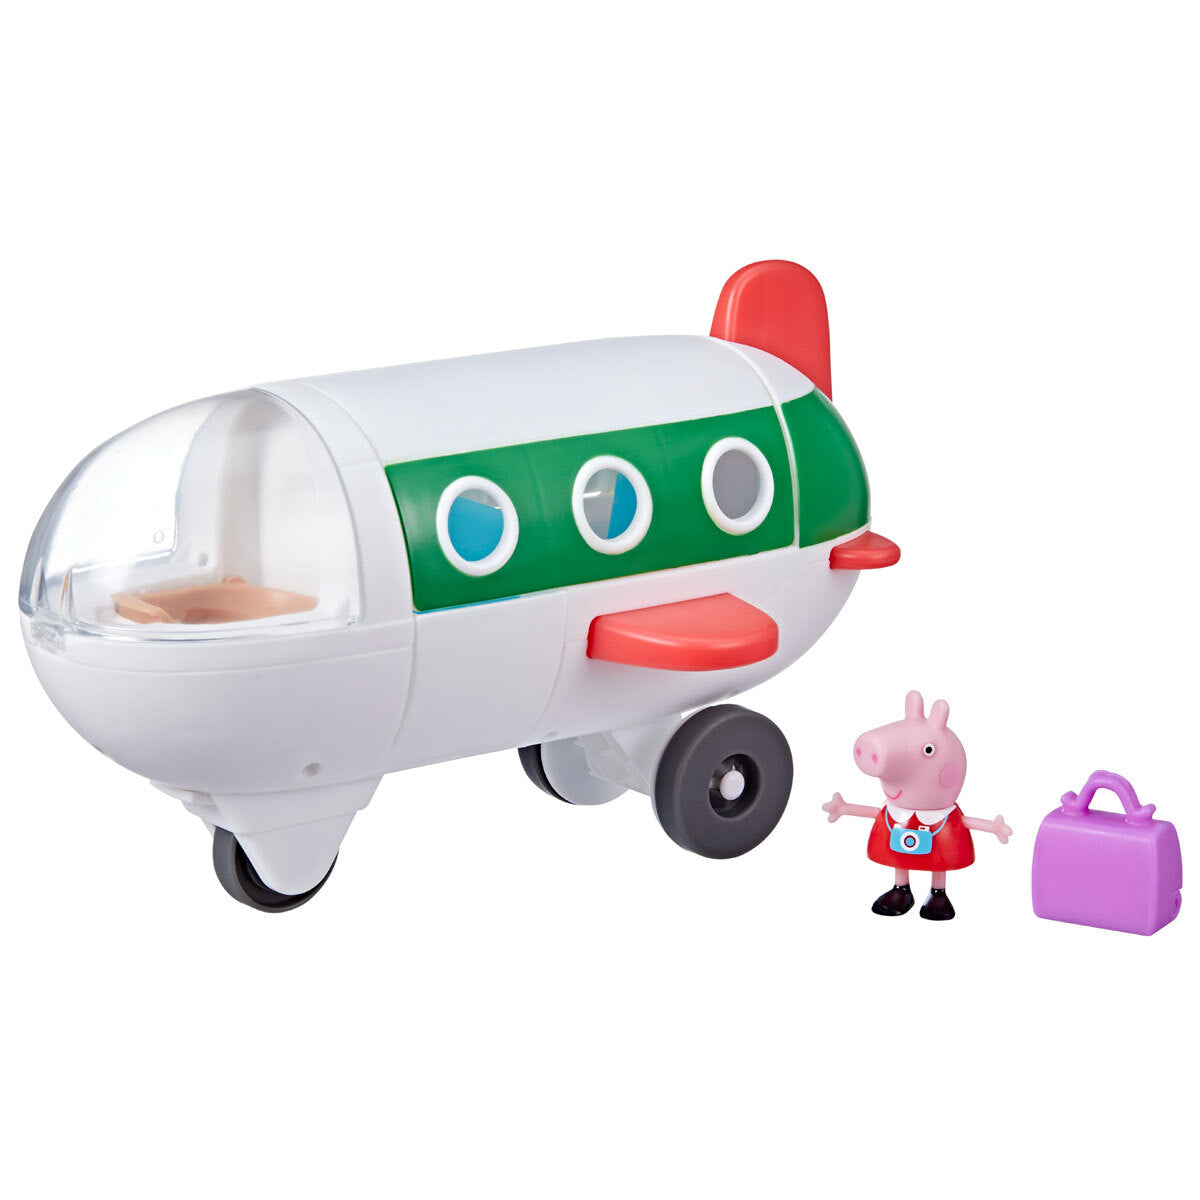 Peppa Pig Peppa Adventures Air Peppa Playset